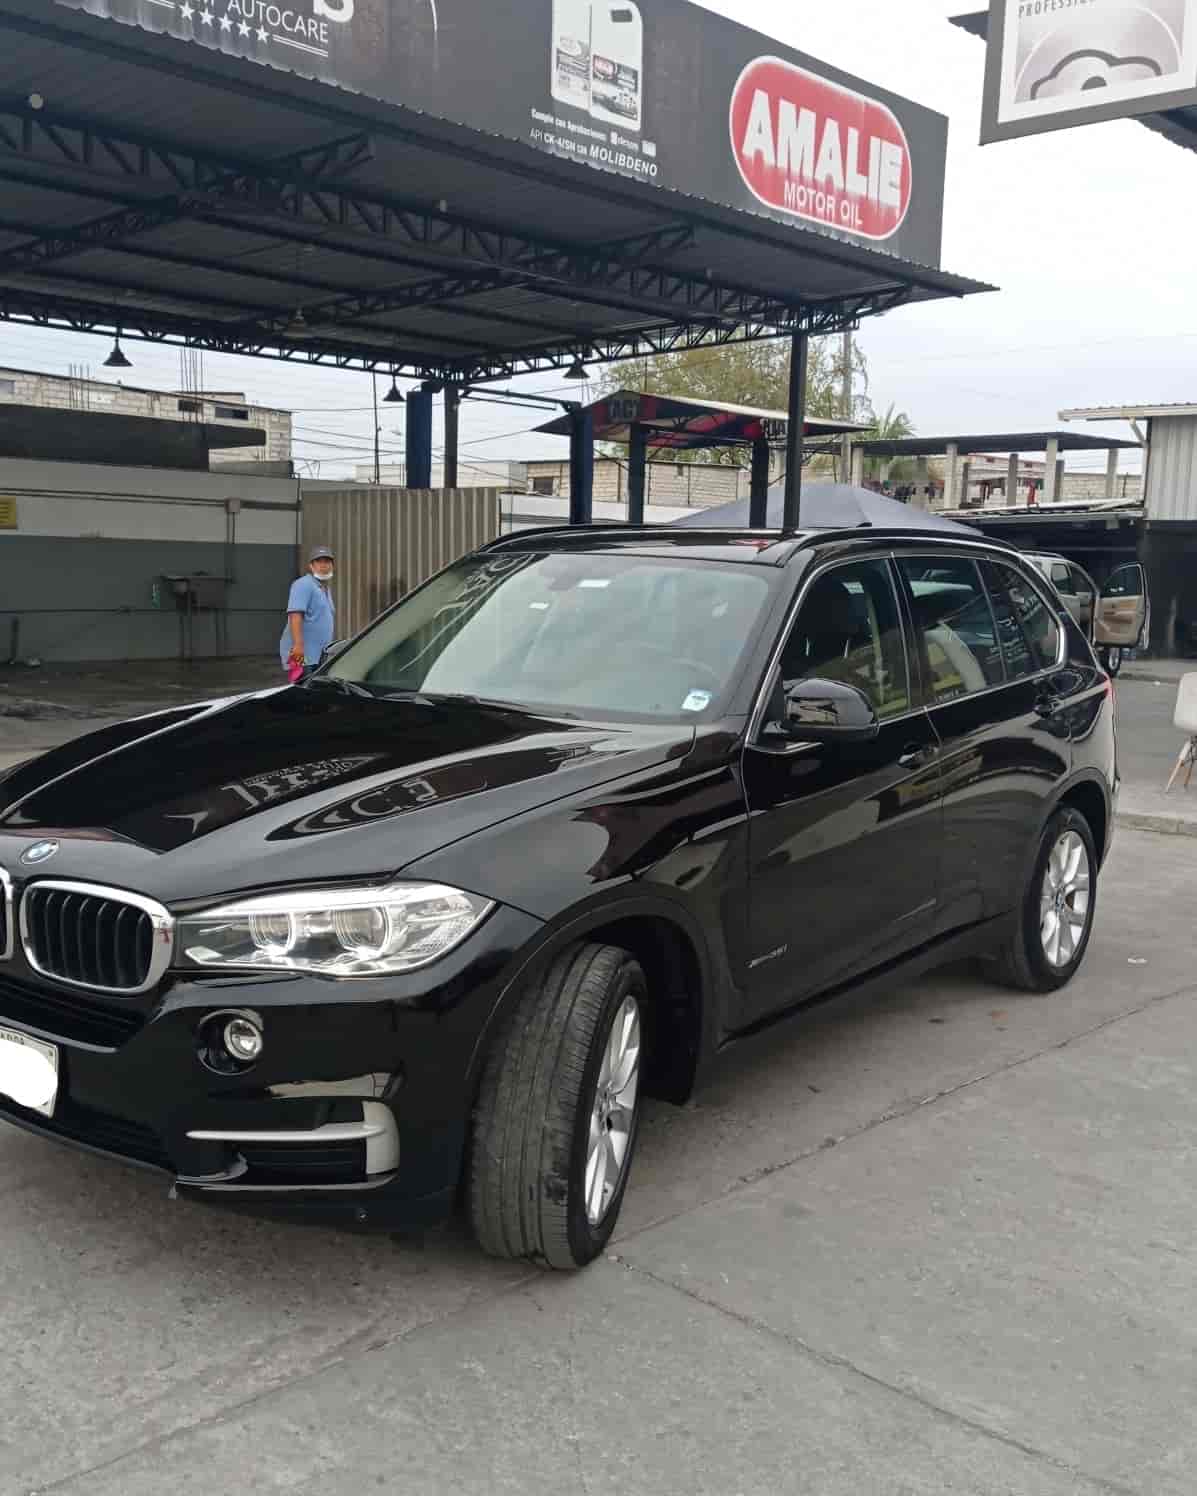 Taller de pintura automotriz en guayaquil para auto suv BMW negro